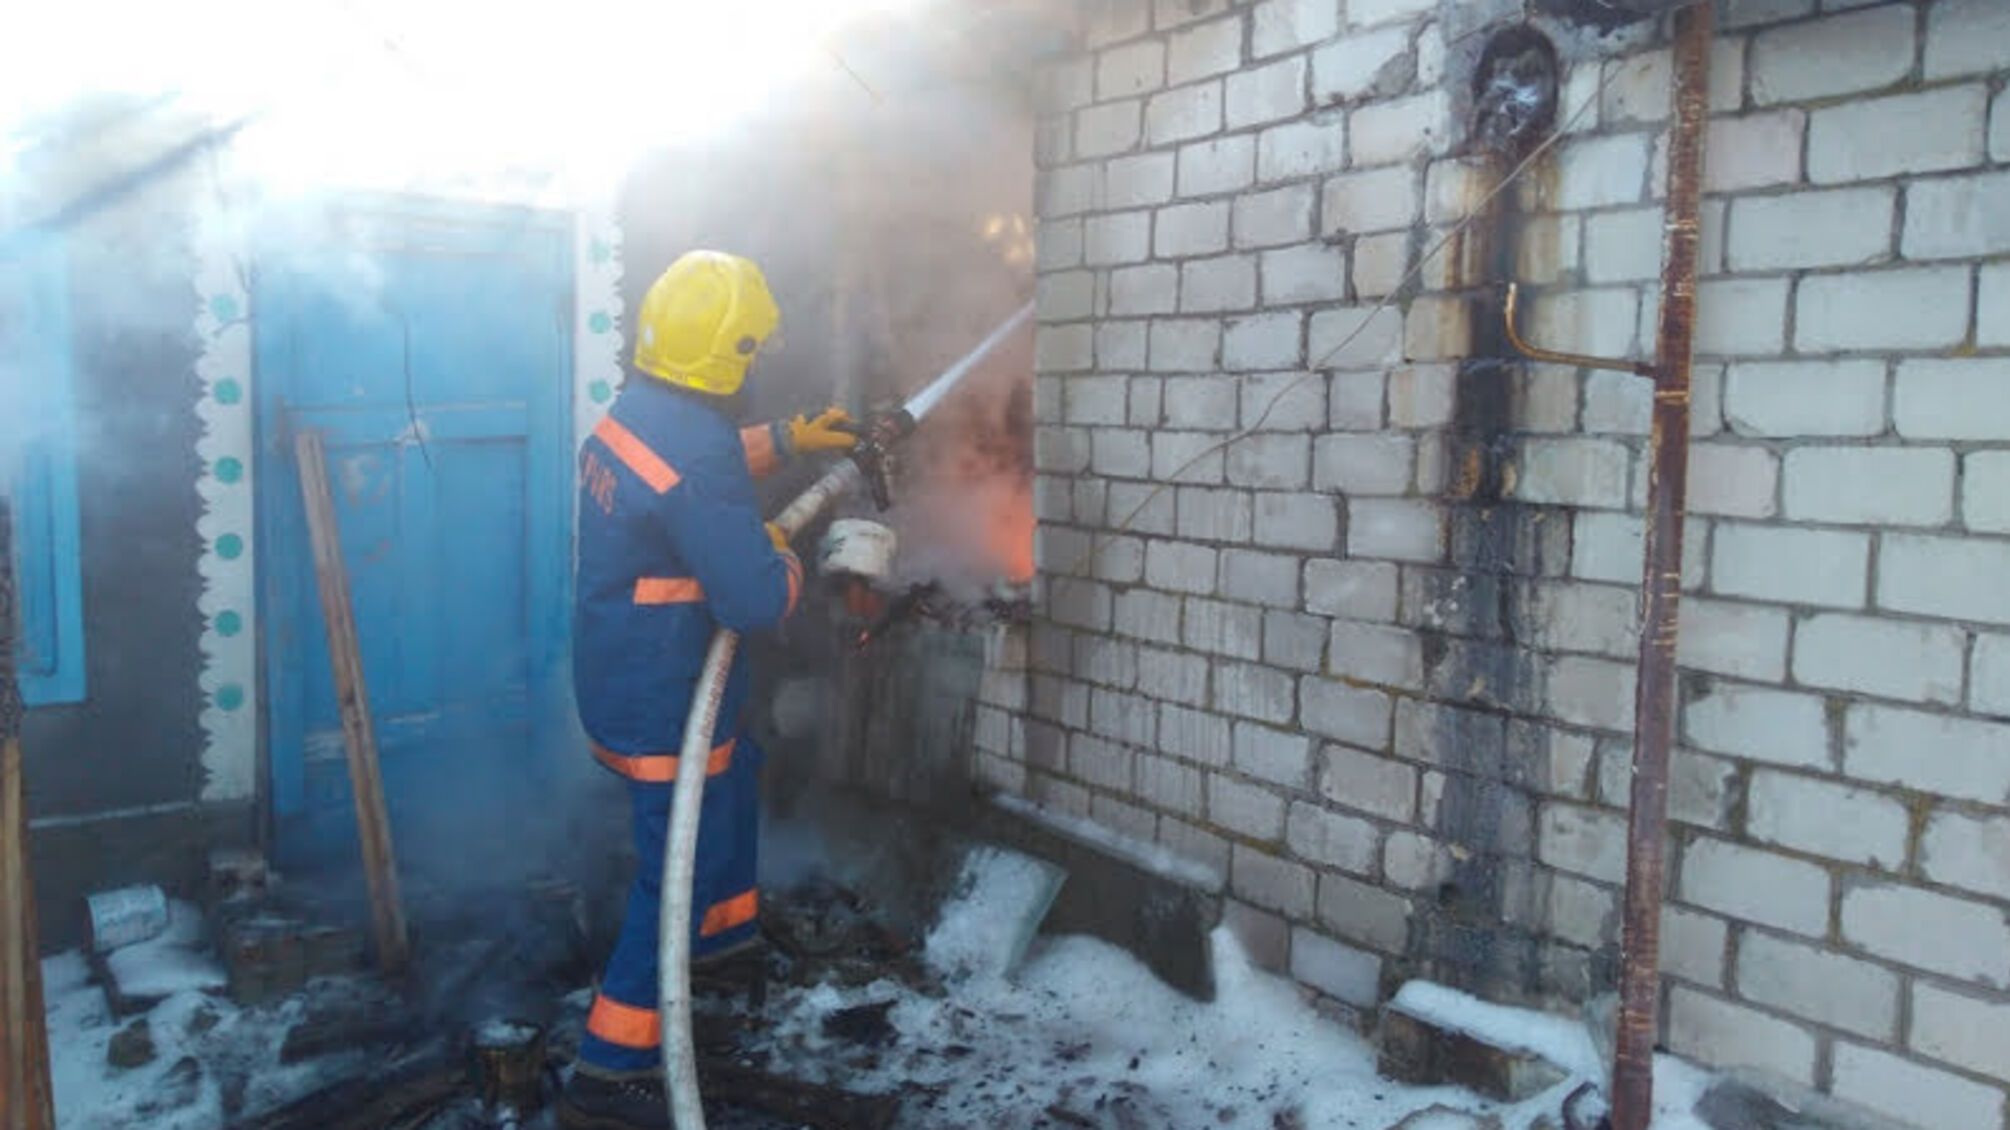 Херсонщина: горностаївські рятувальники під час ліквідації пожежі виявили обгоріле тіло 65-річного чоловіка